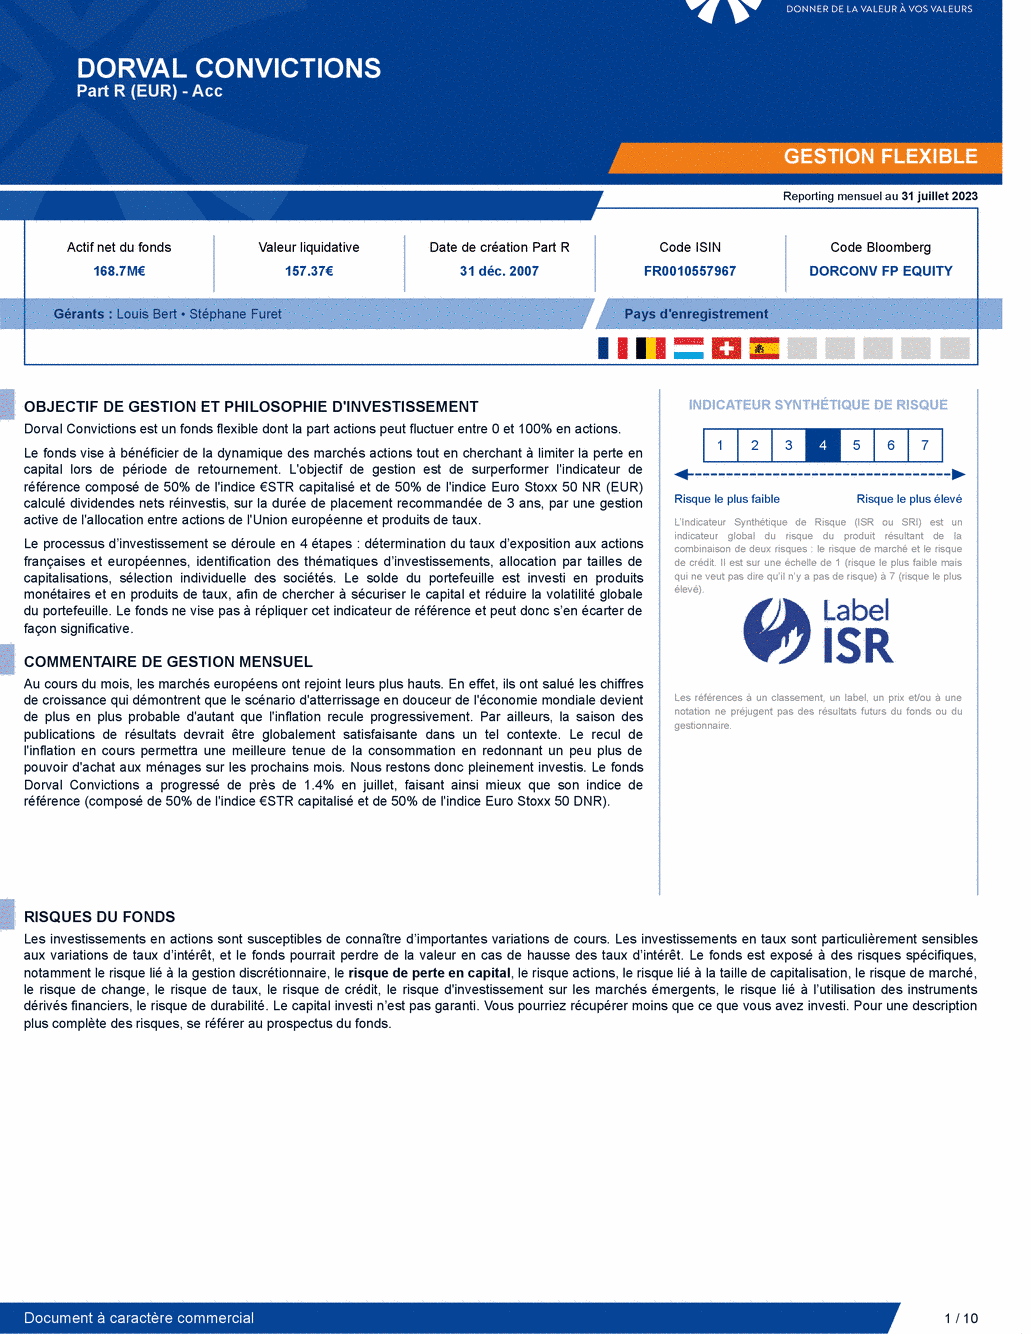 Reporting DORVAL CONVICTIONS P - 31/07/2023 - Français